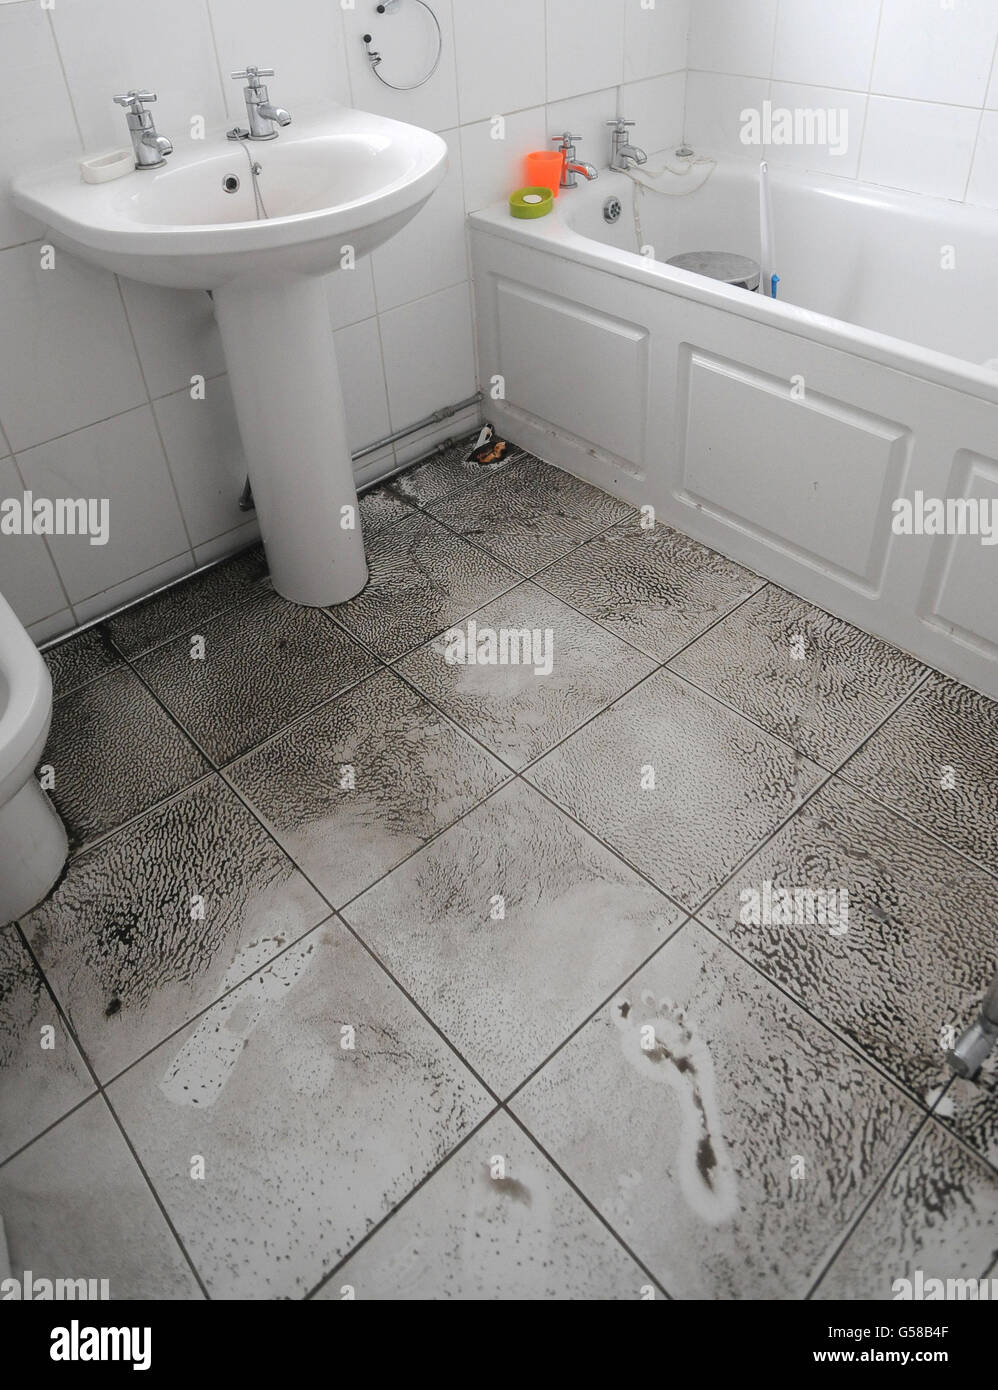 Une empreinte boueuse sur le sol de la salle de bains de l'eau de Paul Burrow a endommagé la maison à Swillington, Leeds, après des inondations qui ont déchiré la région pendant le week-end. Banque D'Images